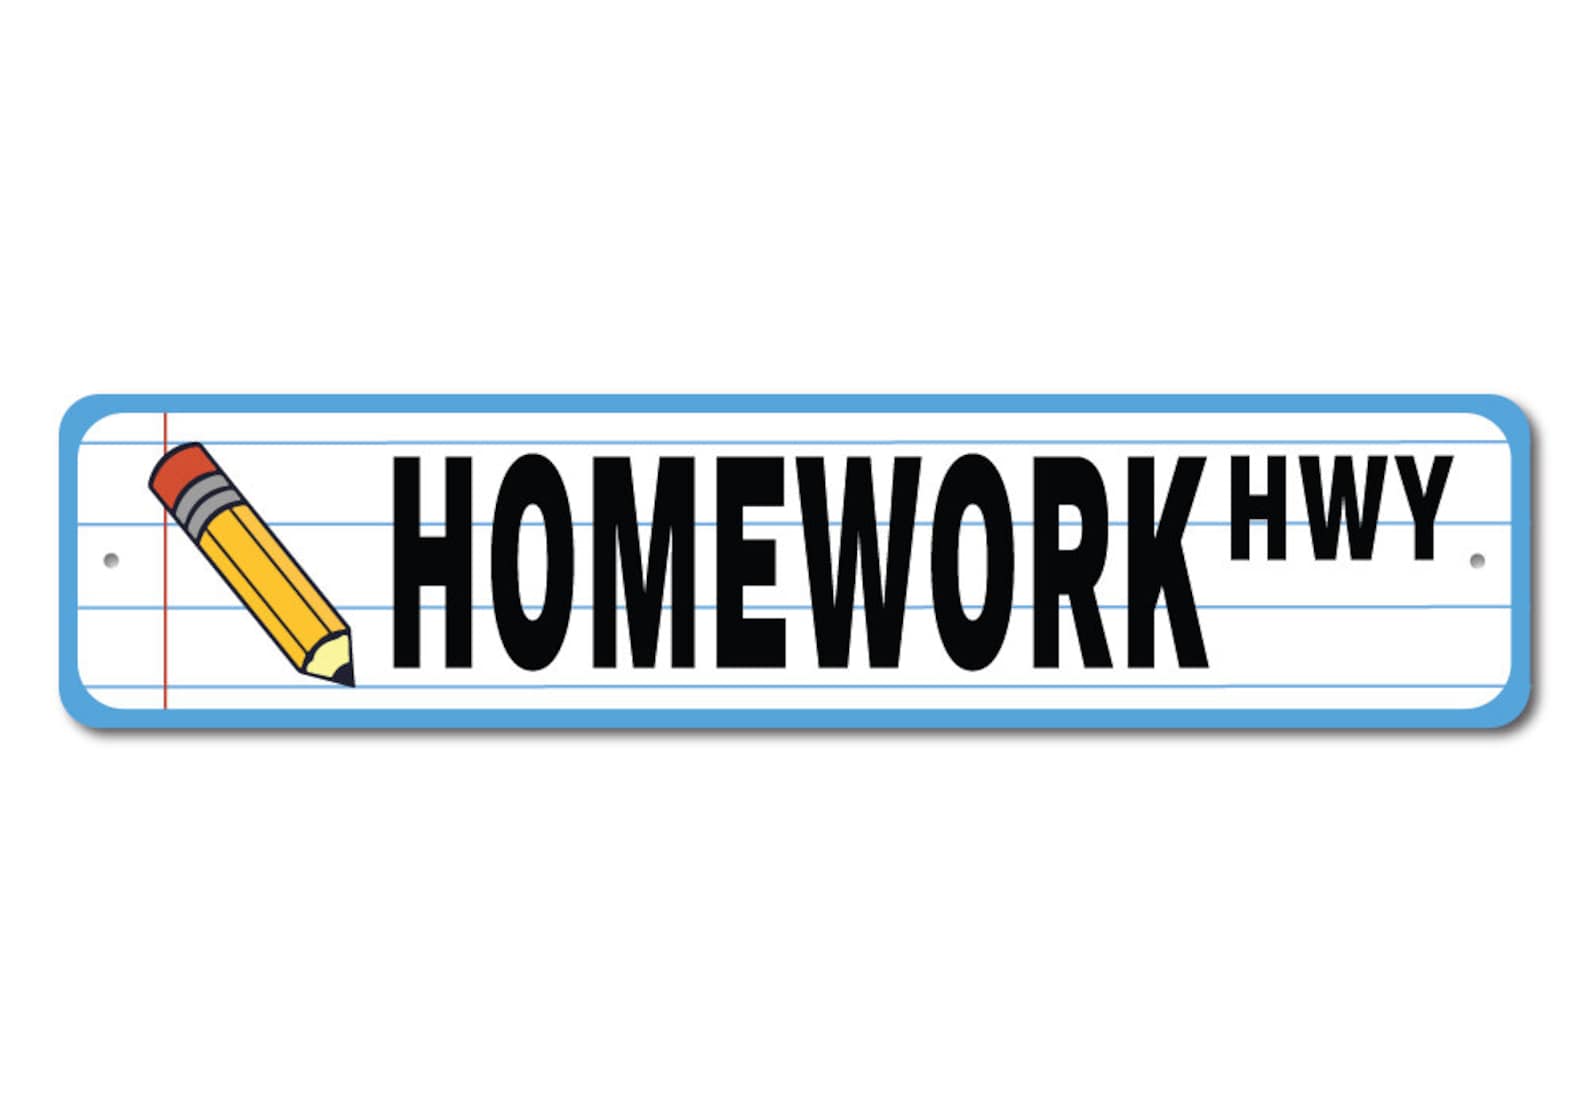 do your homework sign